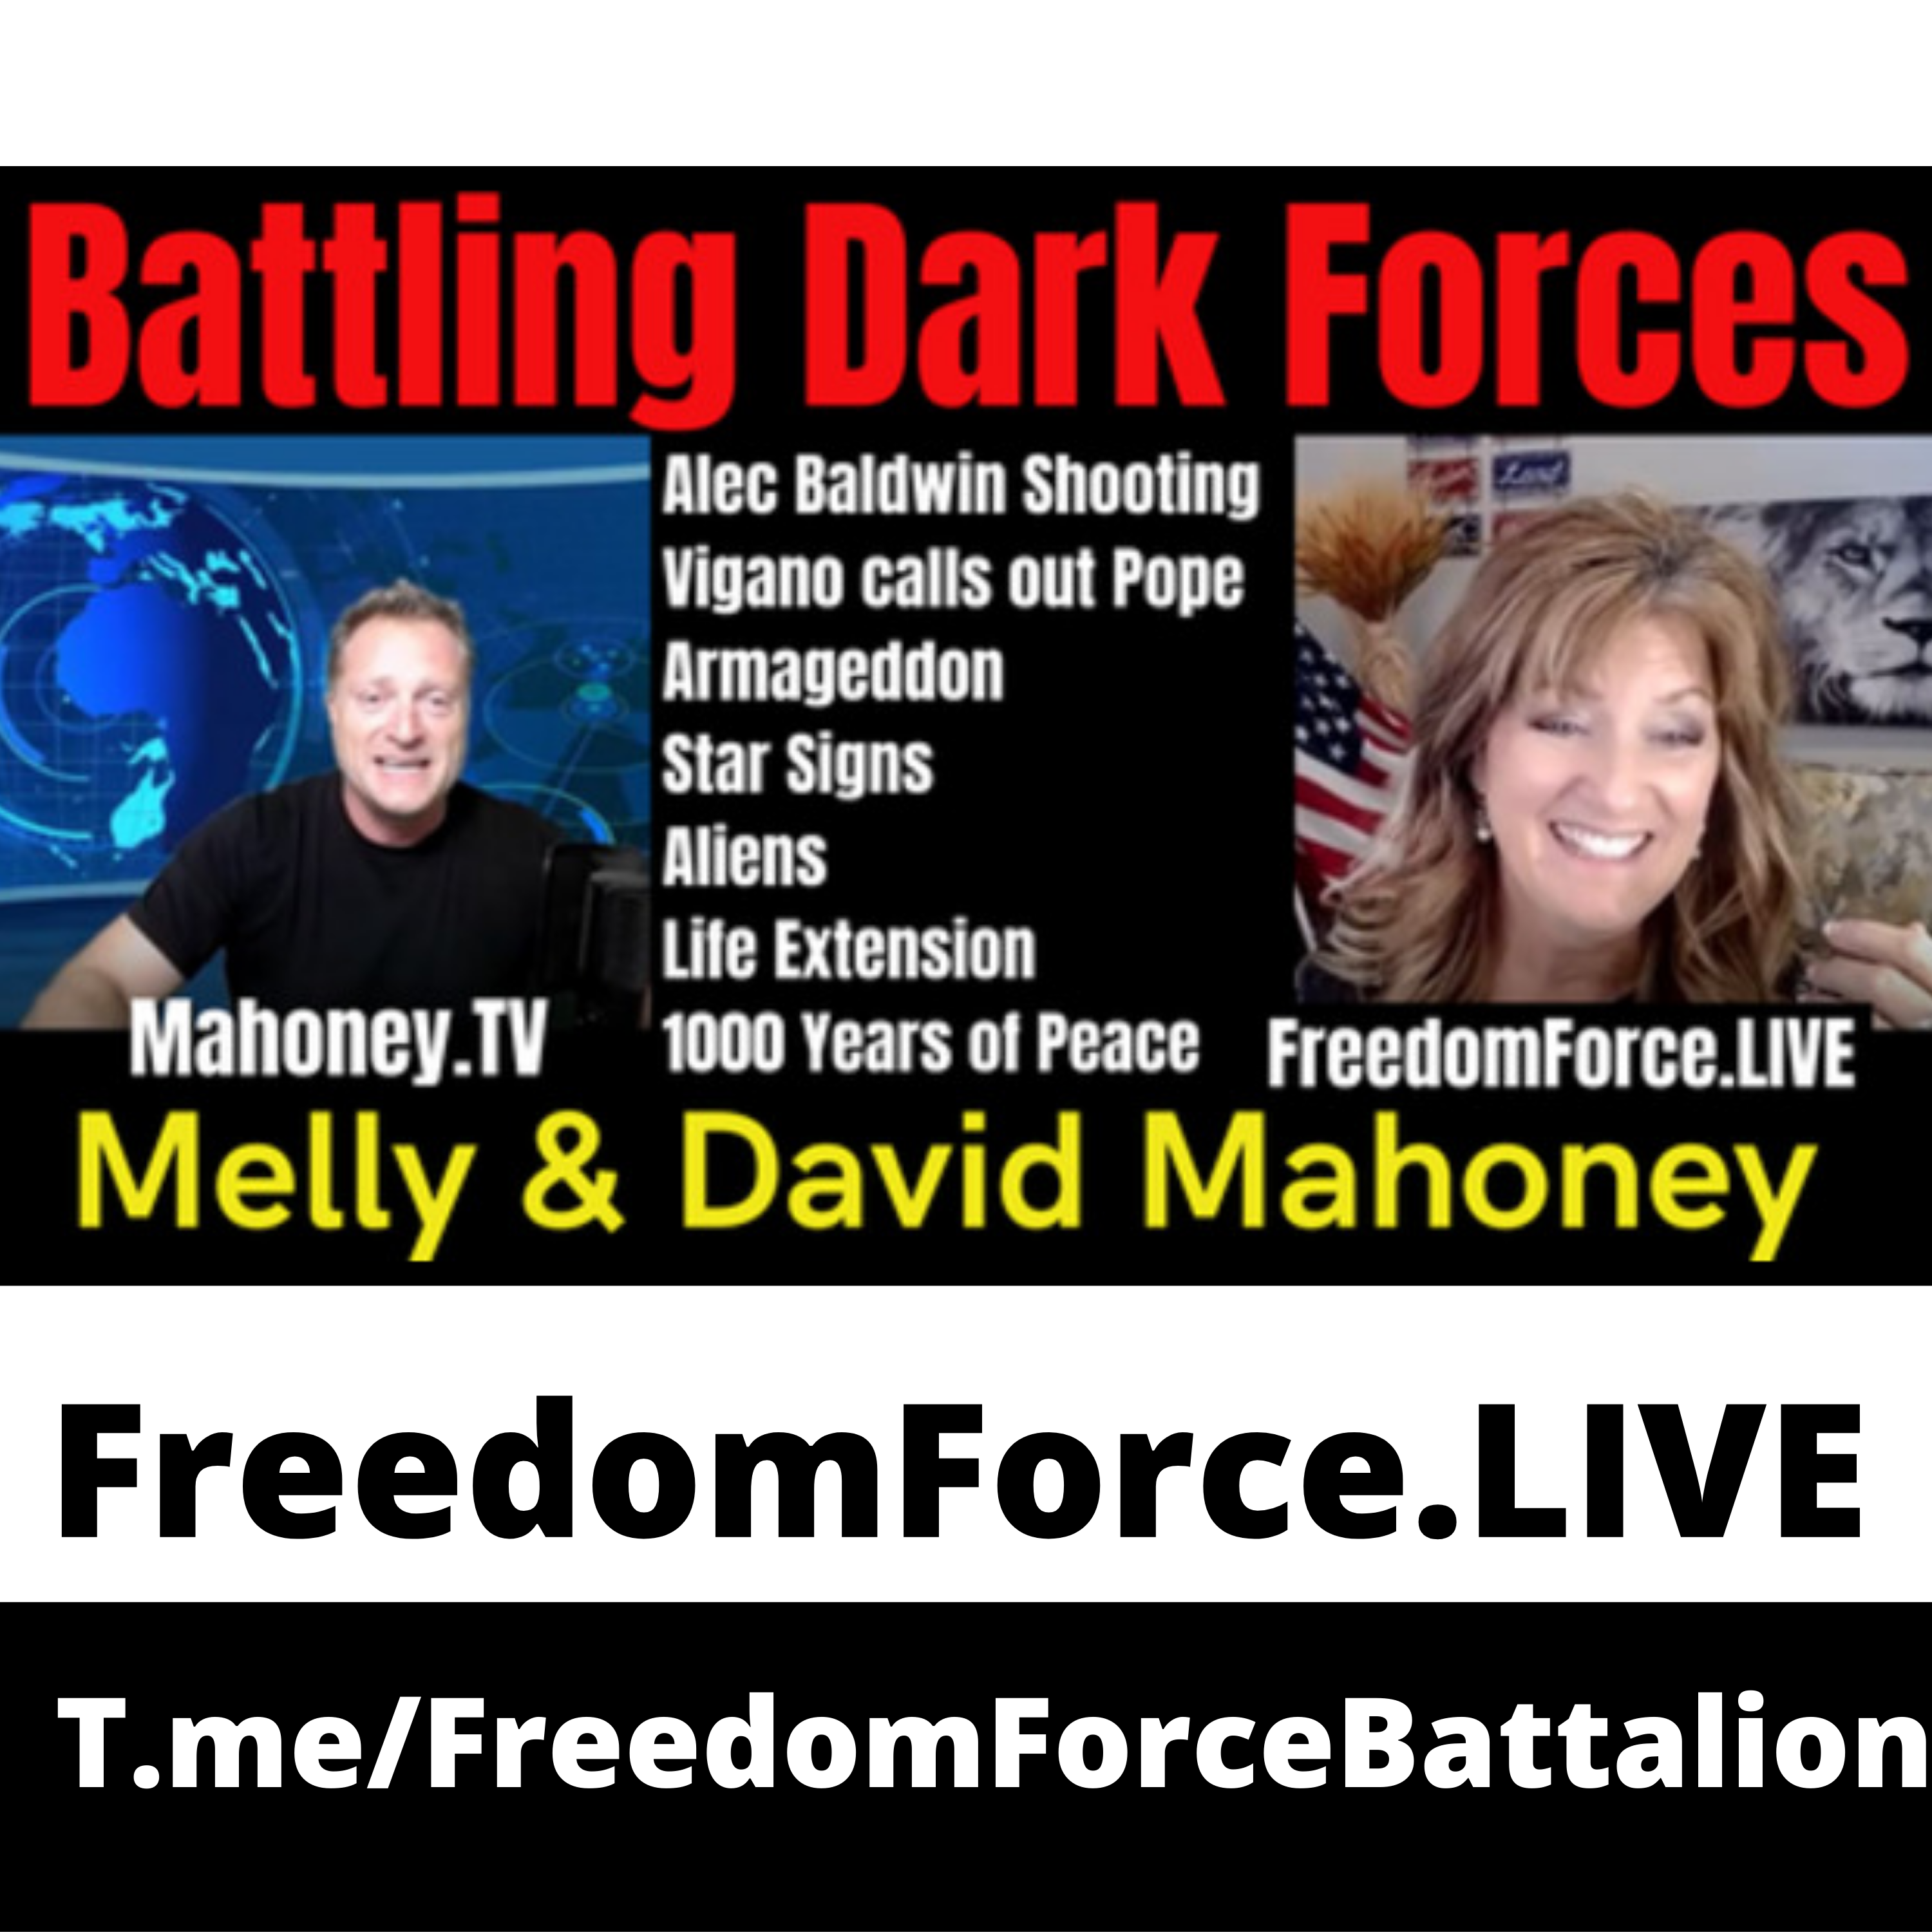 Battling Dark Forces 10.25.21